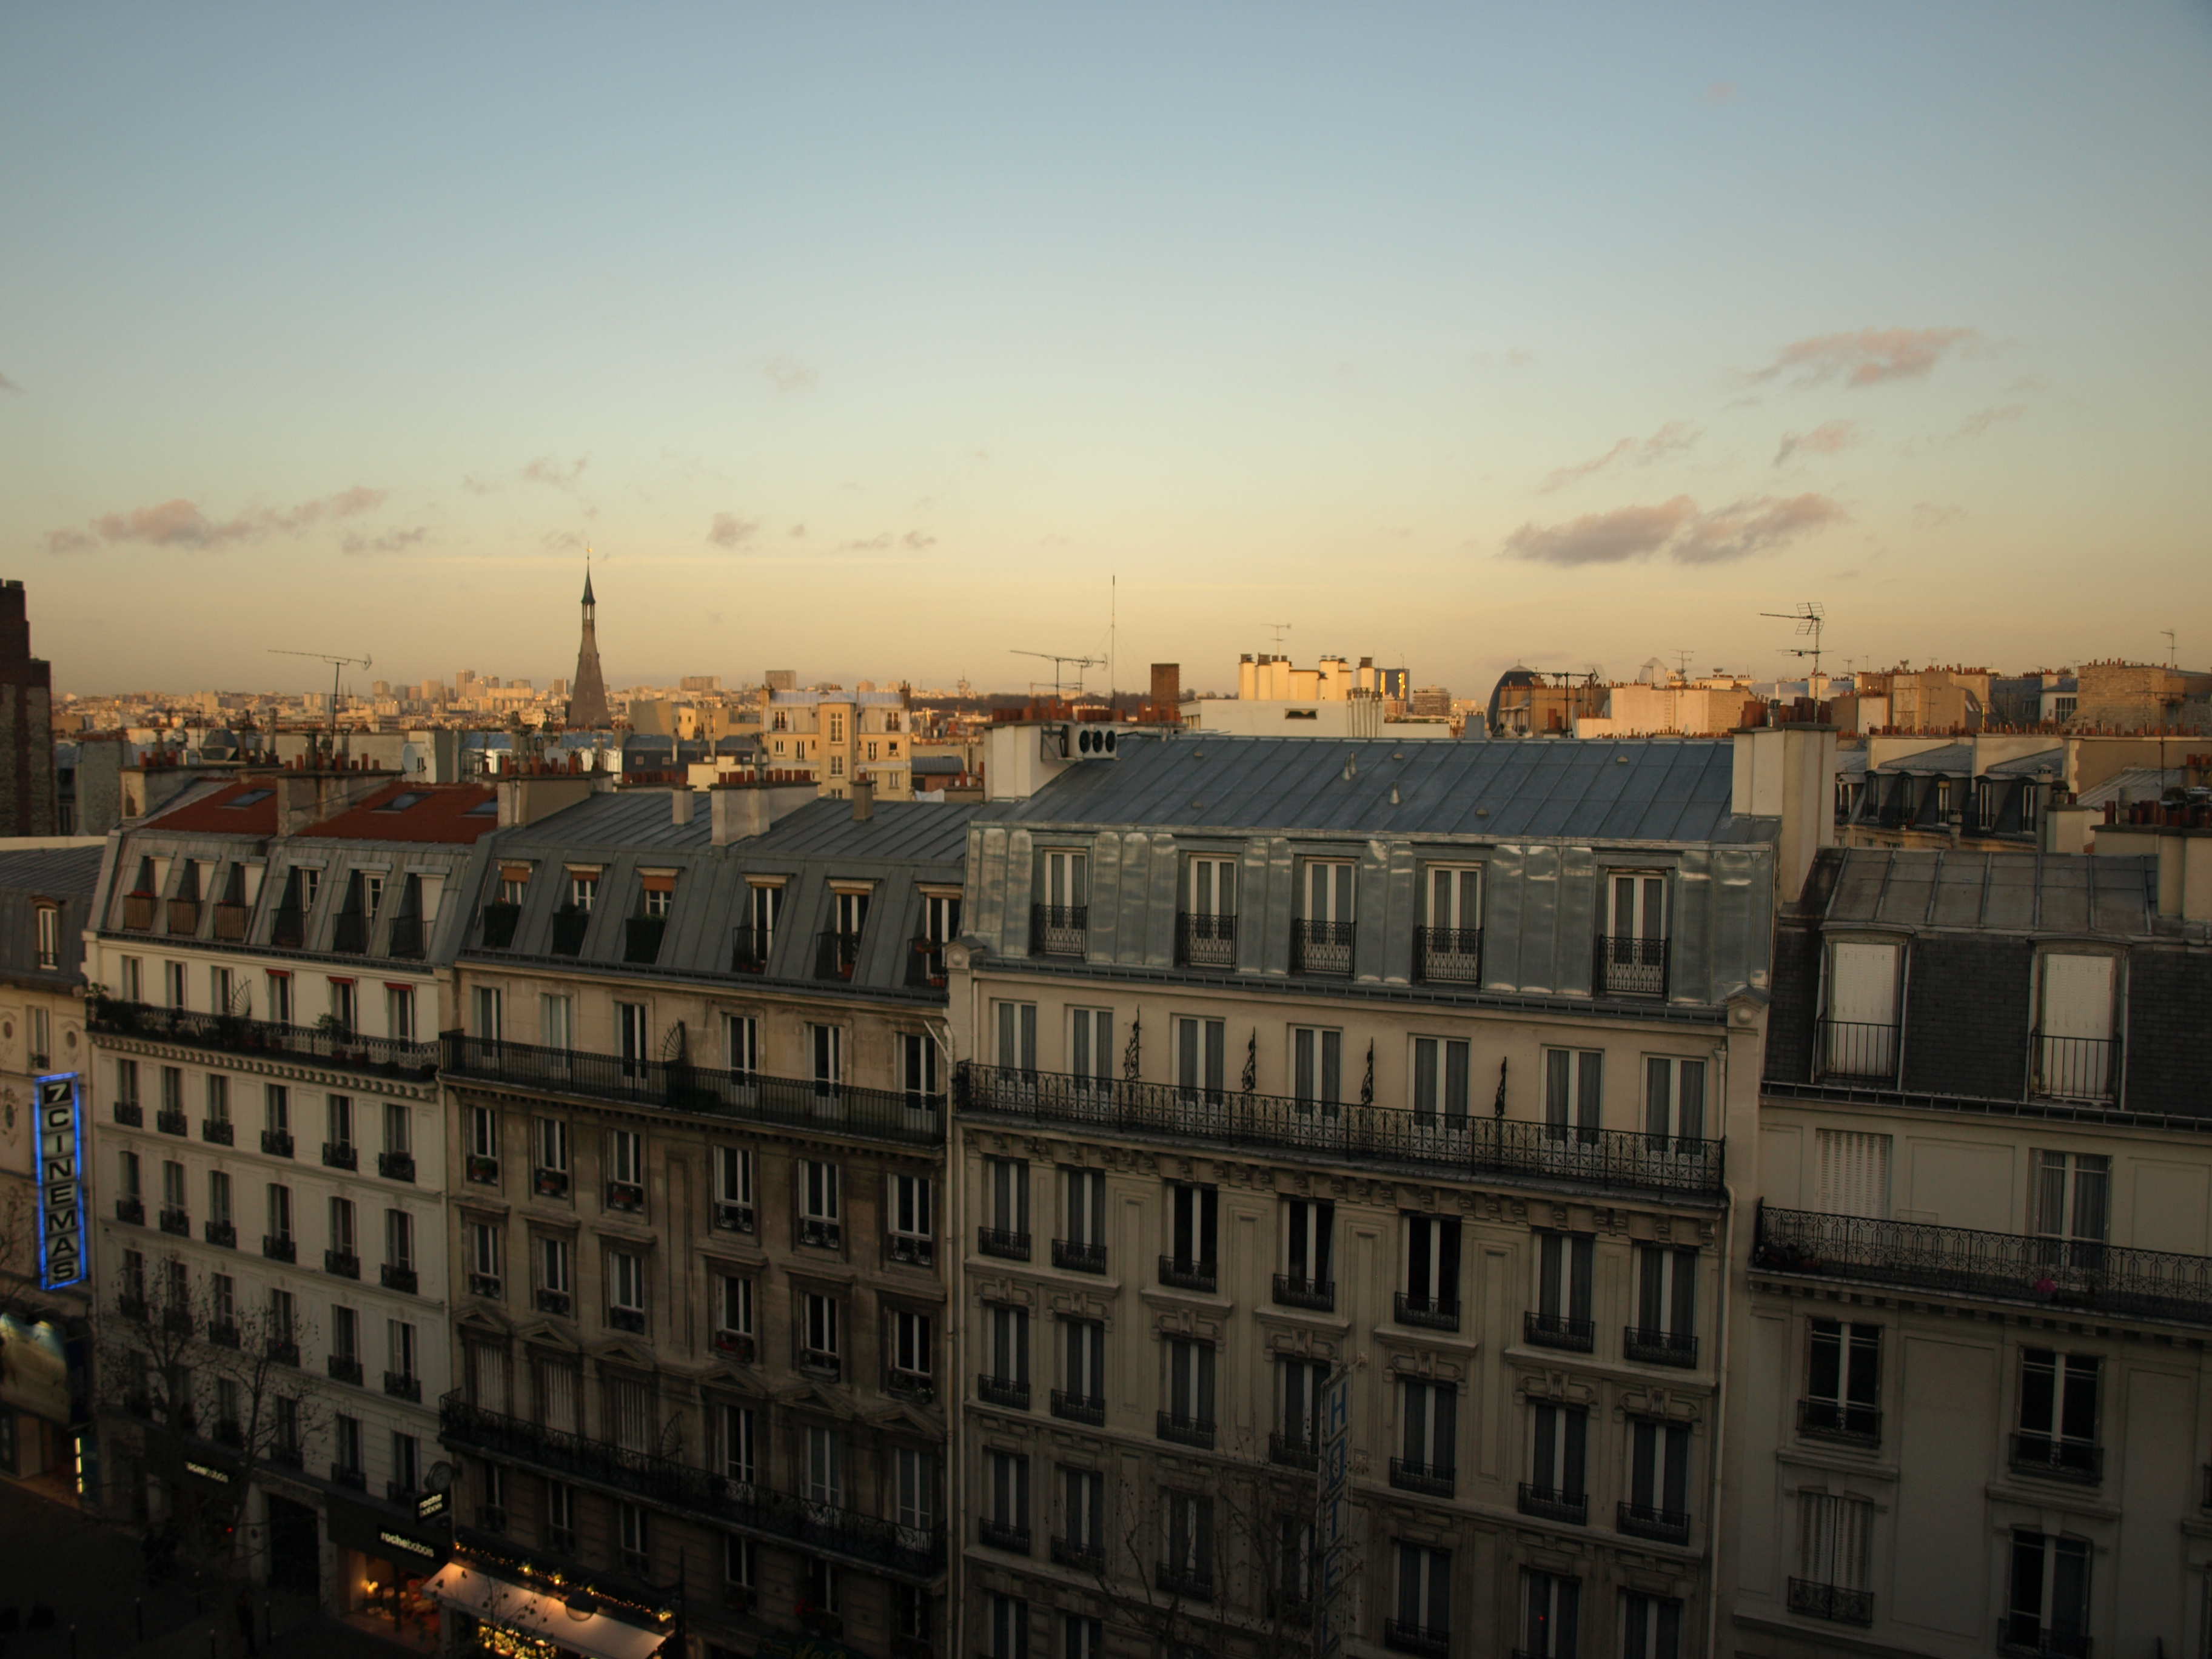 Paris 2009